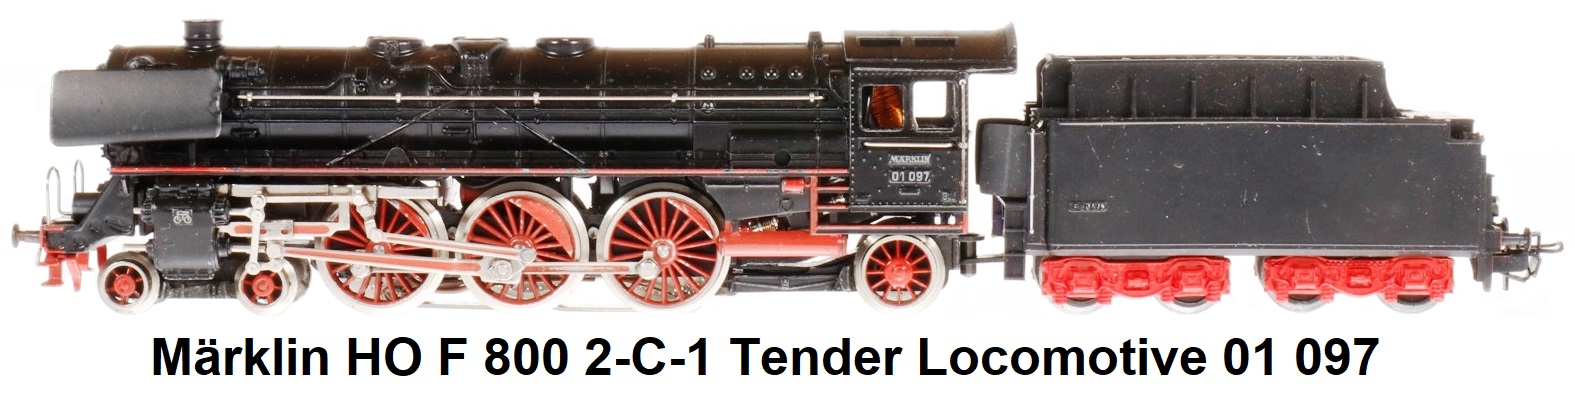 Märklin HO gauge F 800 2-C-1 tender locomotive 01 097